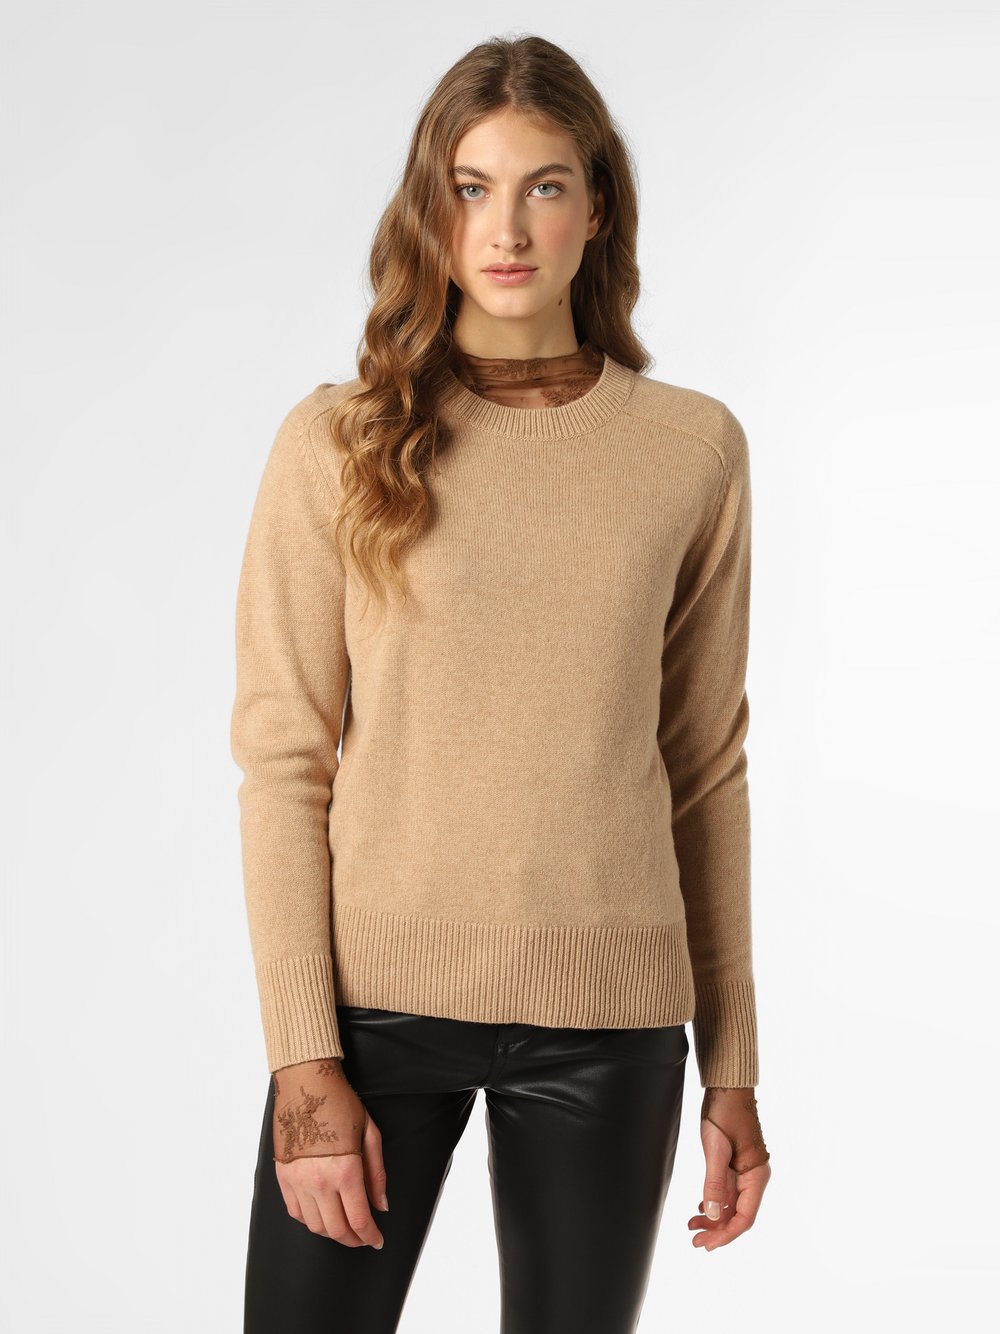 Franco Callegari - Damski sweter z wełny merino, beżowy|brązowy